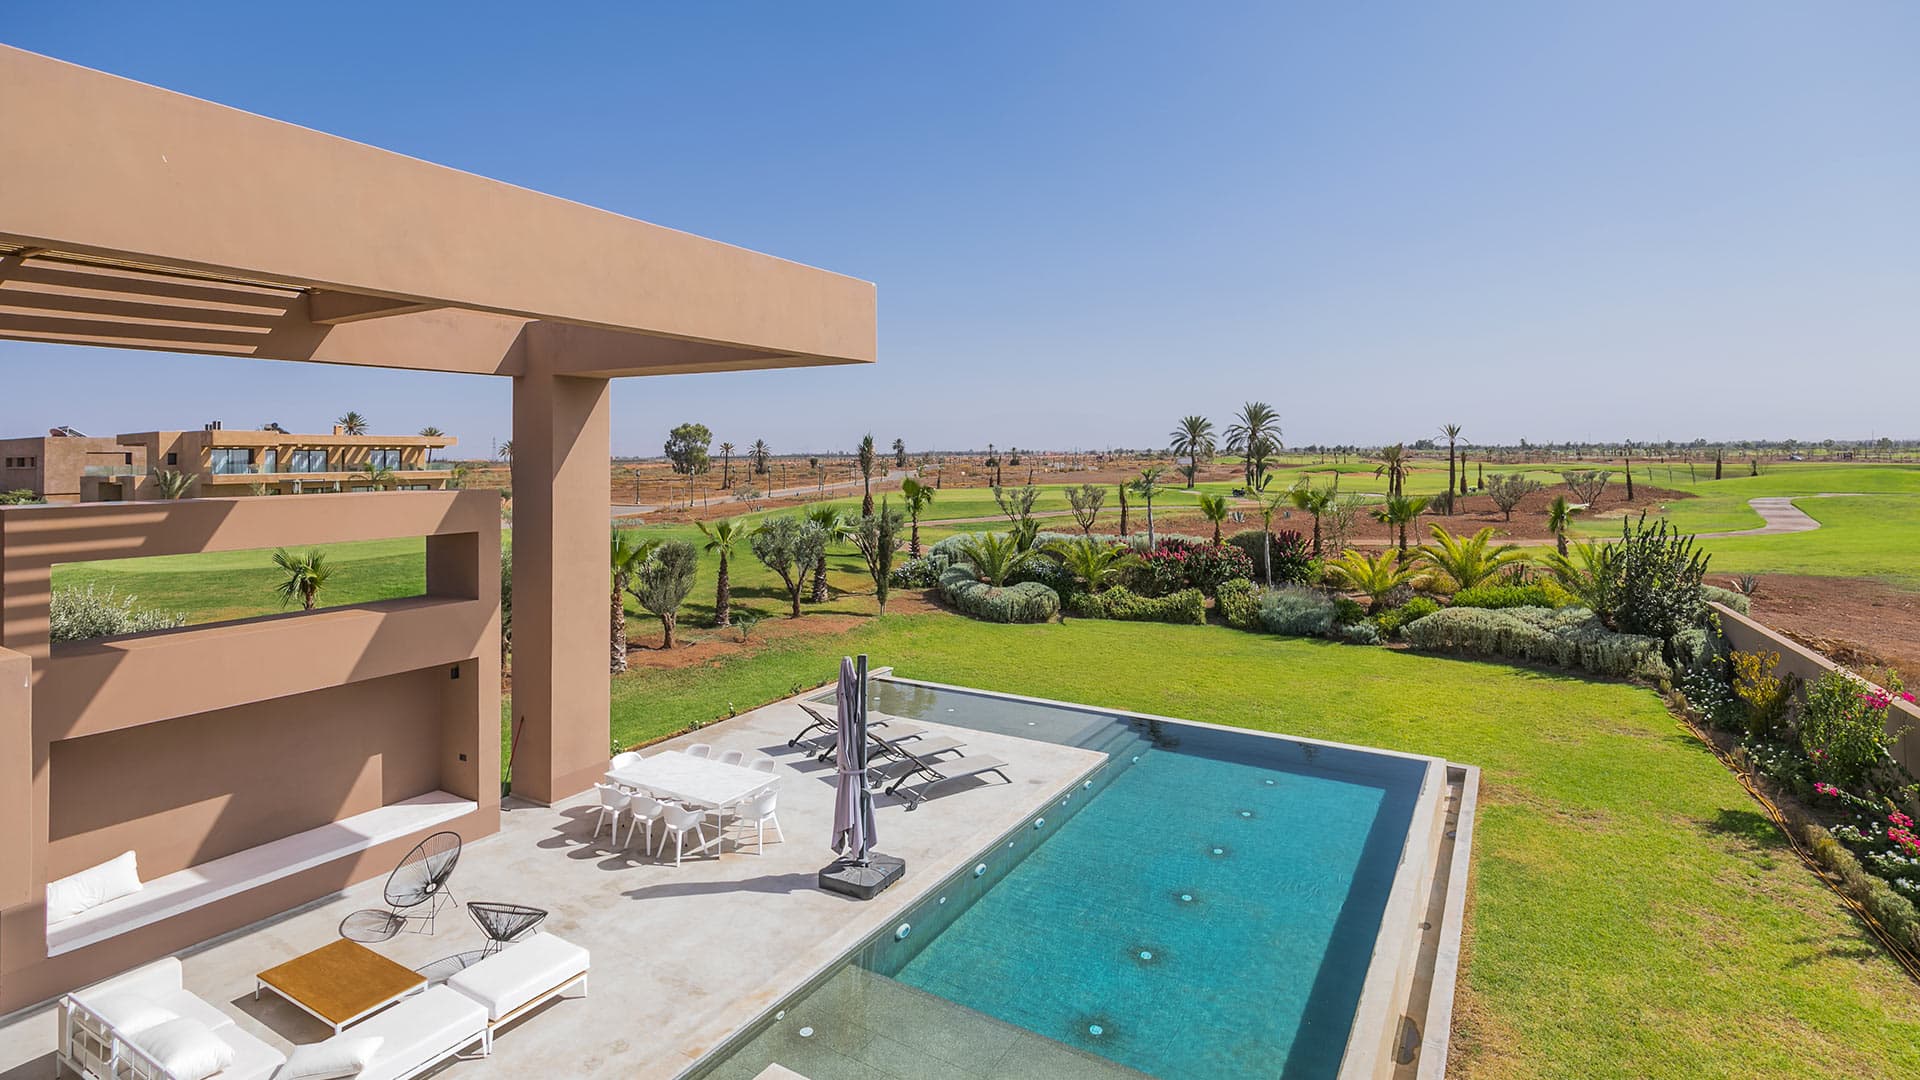 Villa Villa Melka, Rental in Marrakech